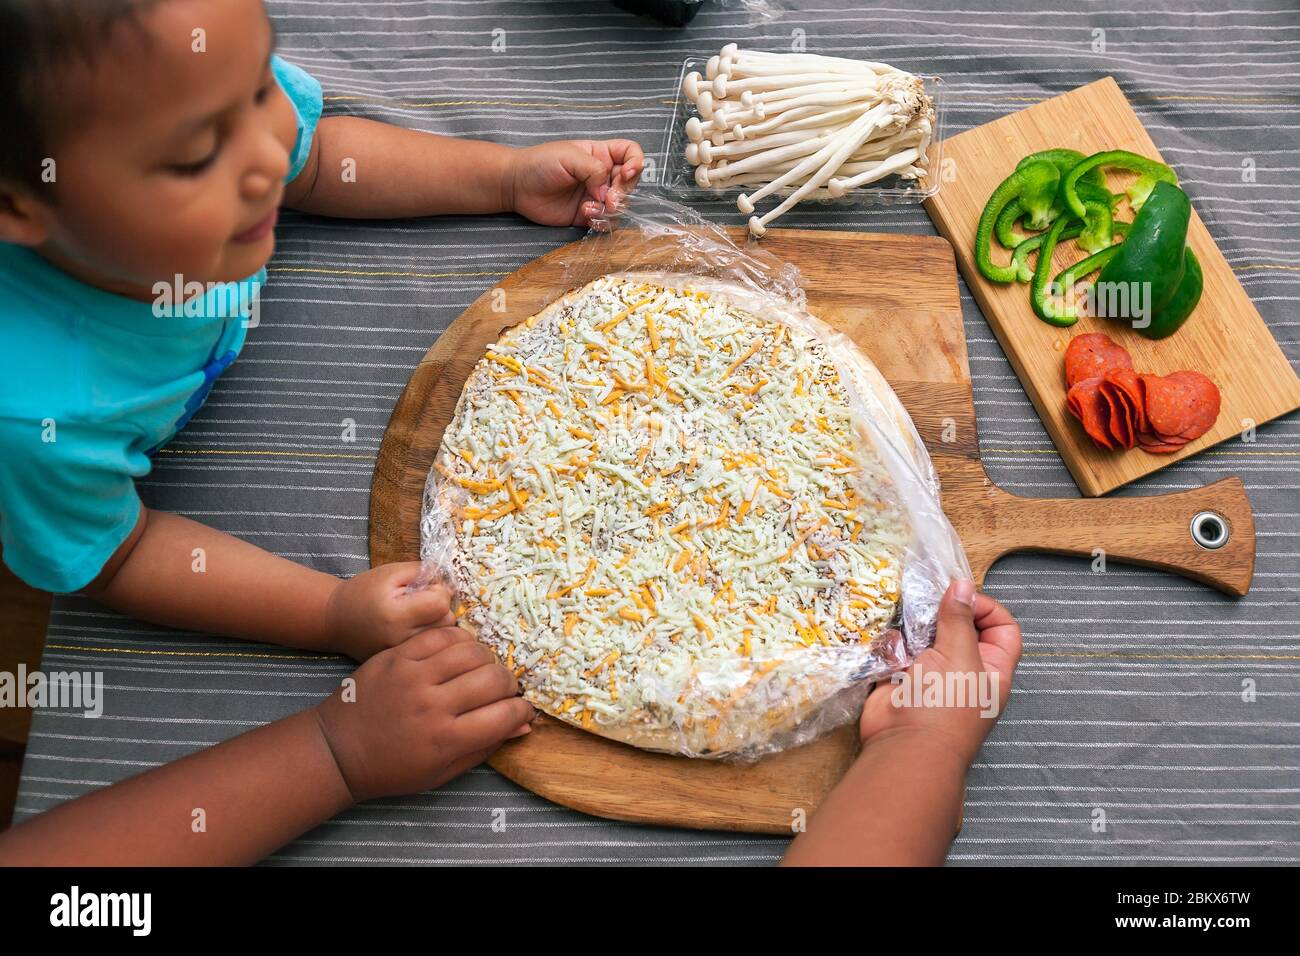 Los niños preparan una pizza de queso congelado con setas enoki, pimientos y pimientos de pavo. Foto de stock